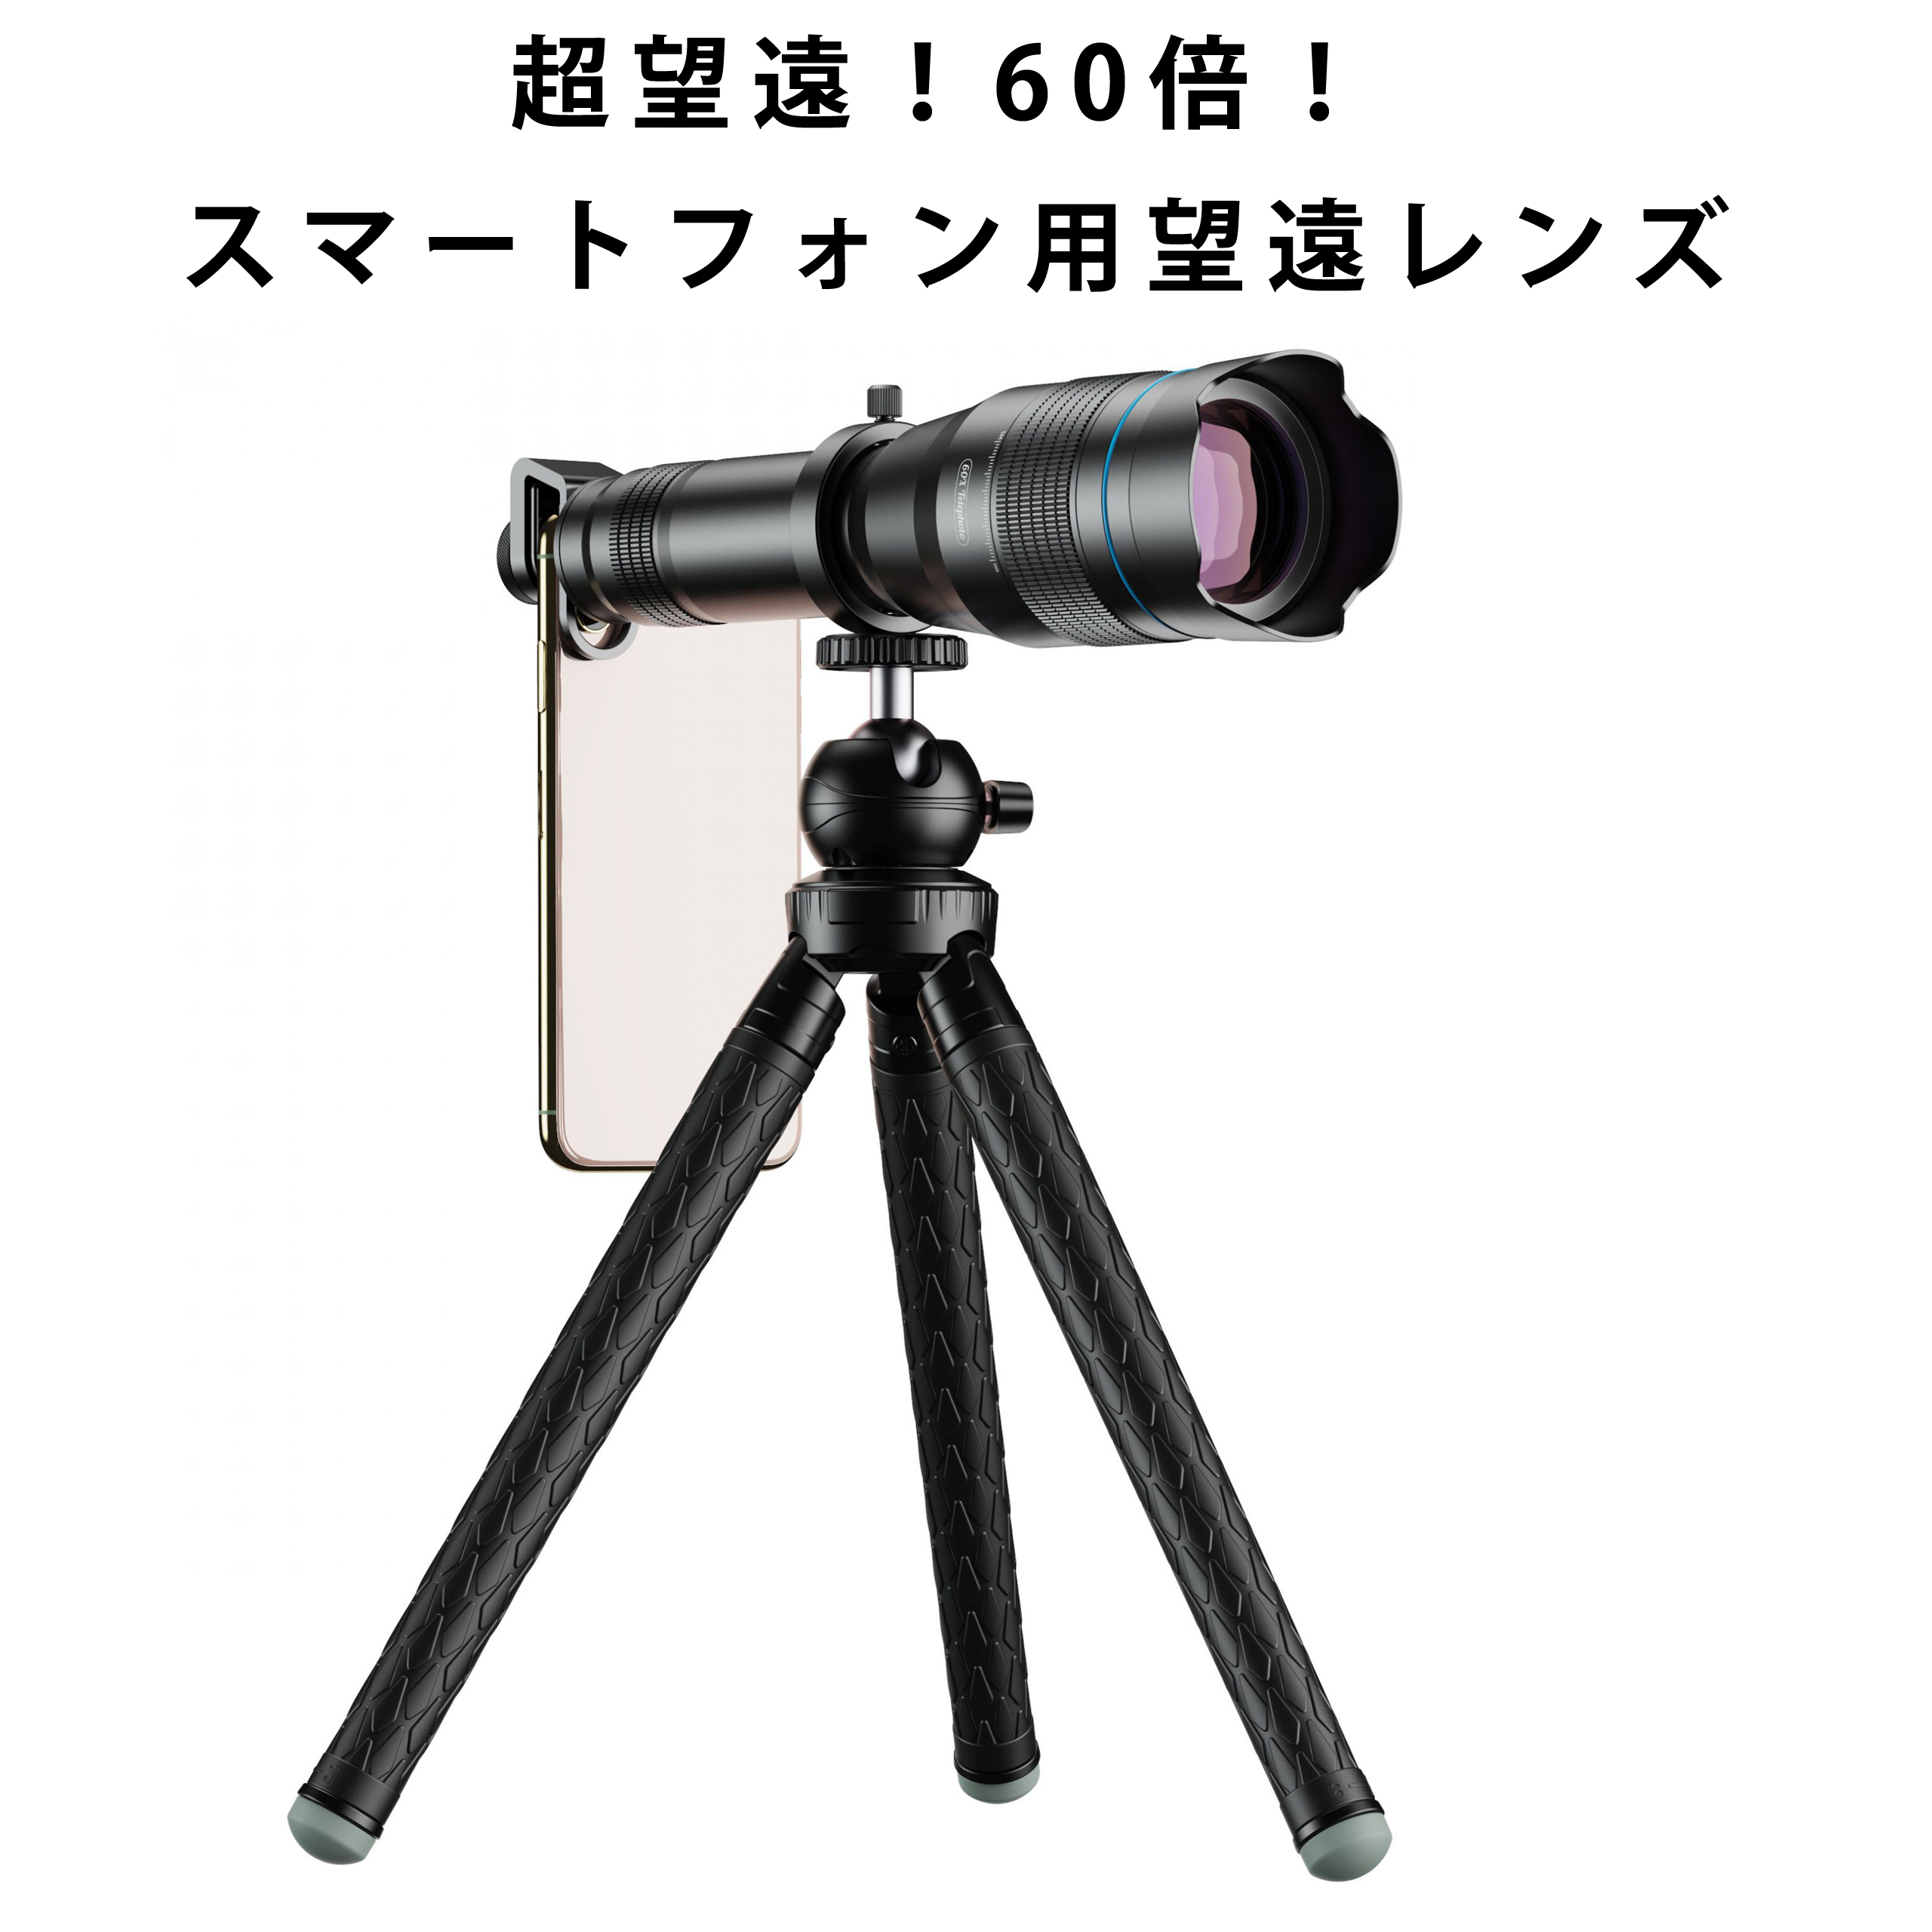 レンズ ズームレンズ 望遠レンズ 望遠鏡 60倍 高価値 三脚 買物 Apexel スマートフォン用レンズ APL-JS60XJJ09 スマホ用レンズ スマートフォン用 送料無料 HD 三脚付き ブラック 撮影